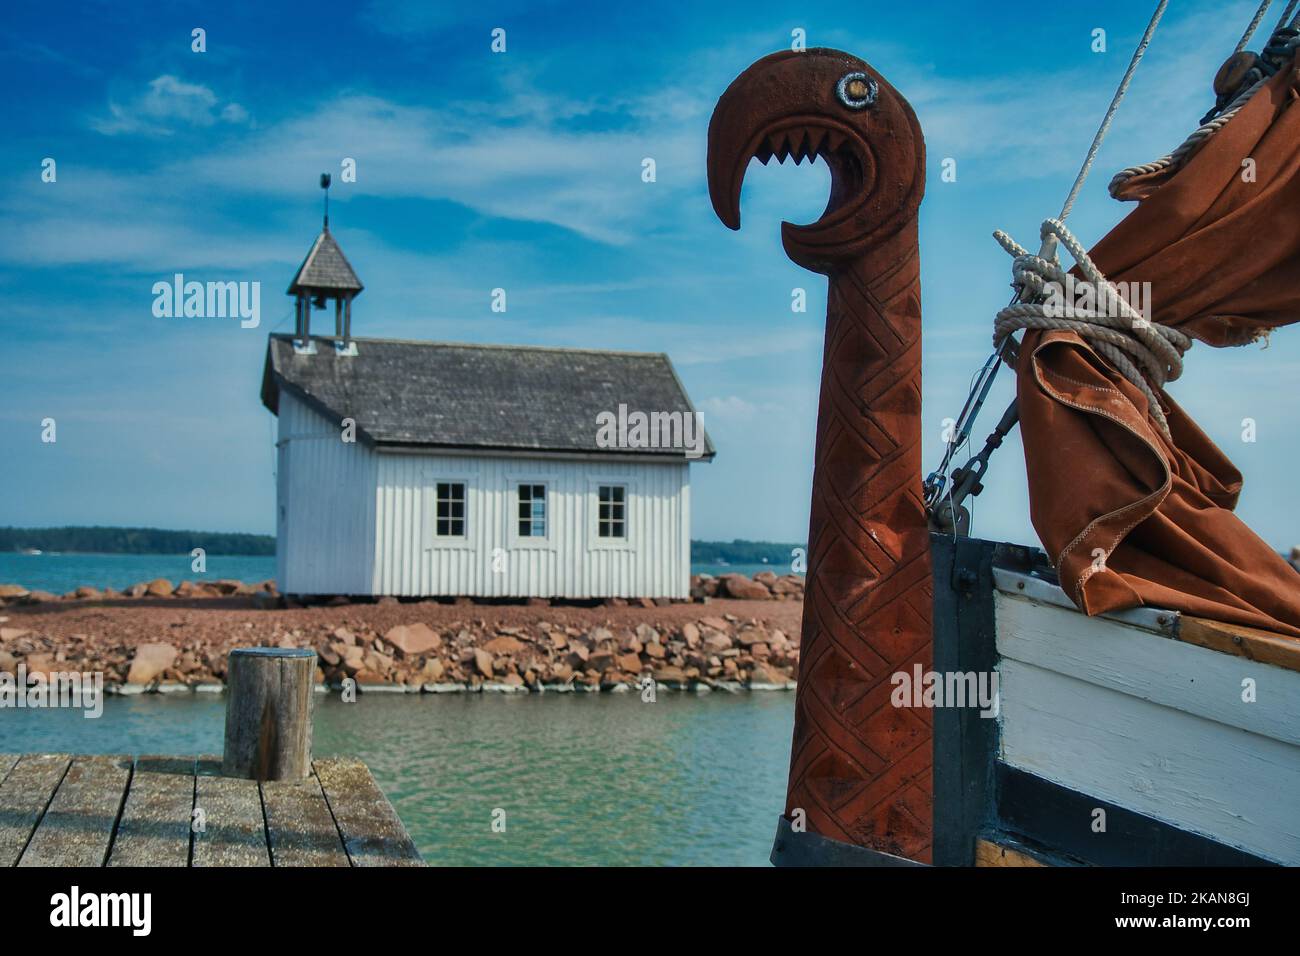 Eine kleine Holzkirche auf einer Insel mit einem wikinger-Langschiff an den Docks mit einem Drachenkopf auf dem Bug Stockfoto